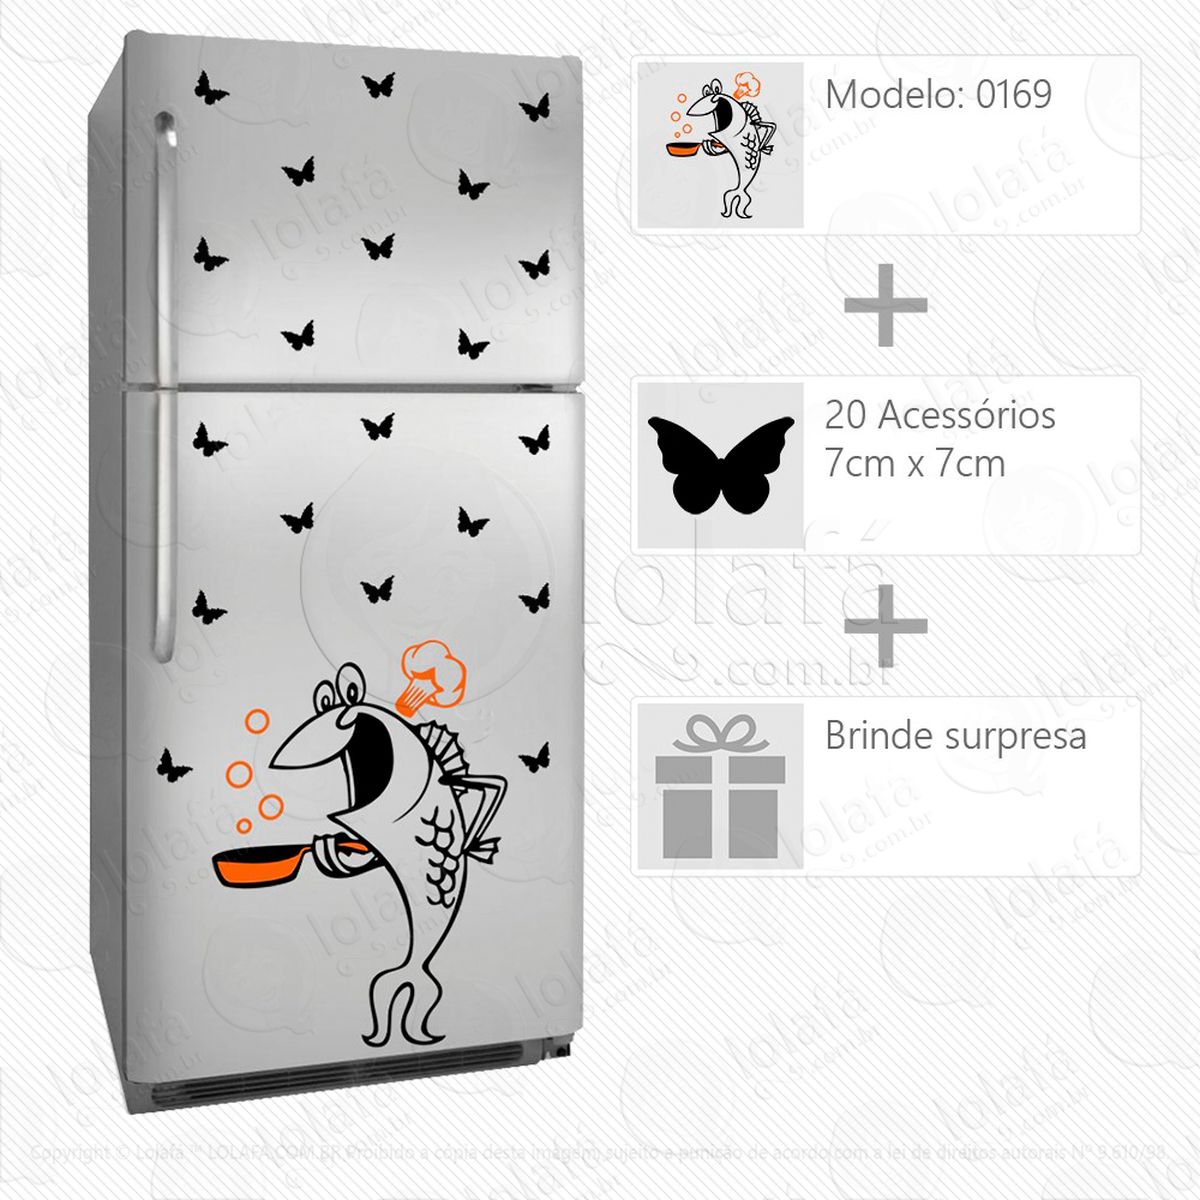 cozinheiro adesivo para geladeira e frigobar - mod:169